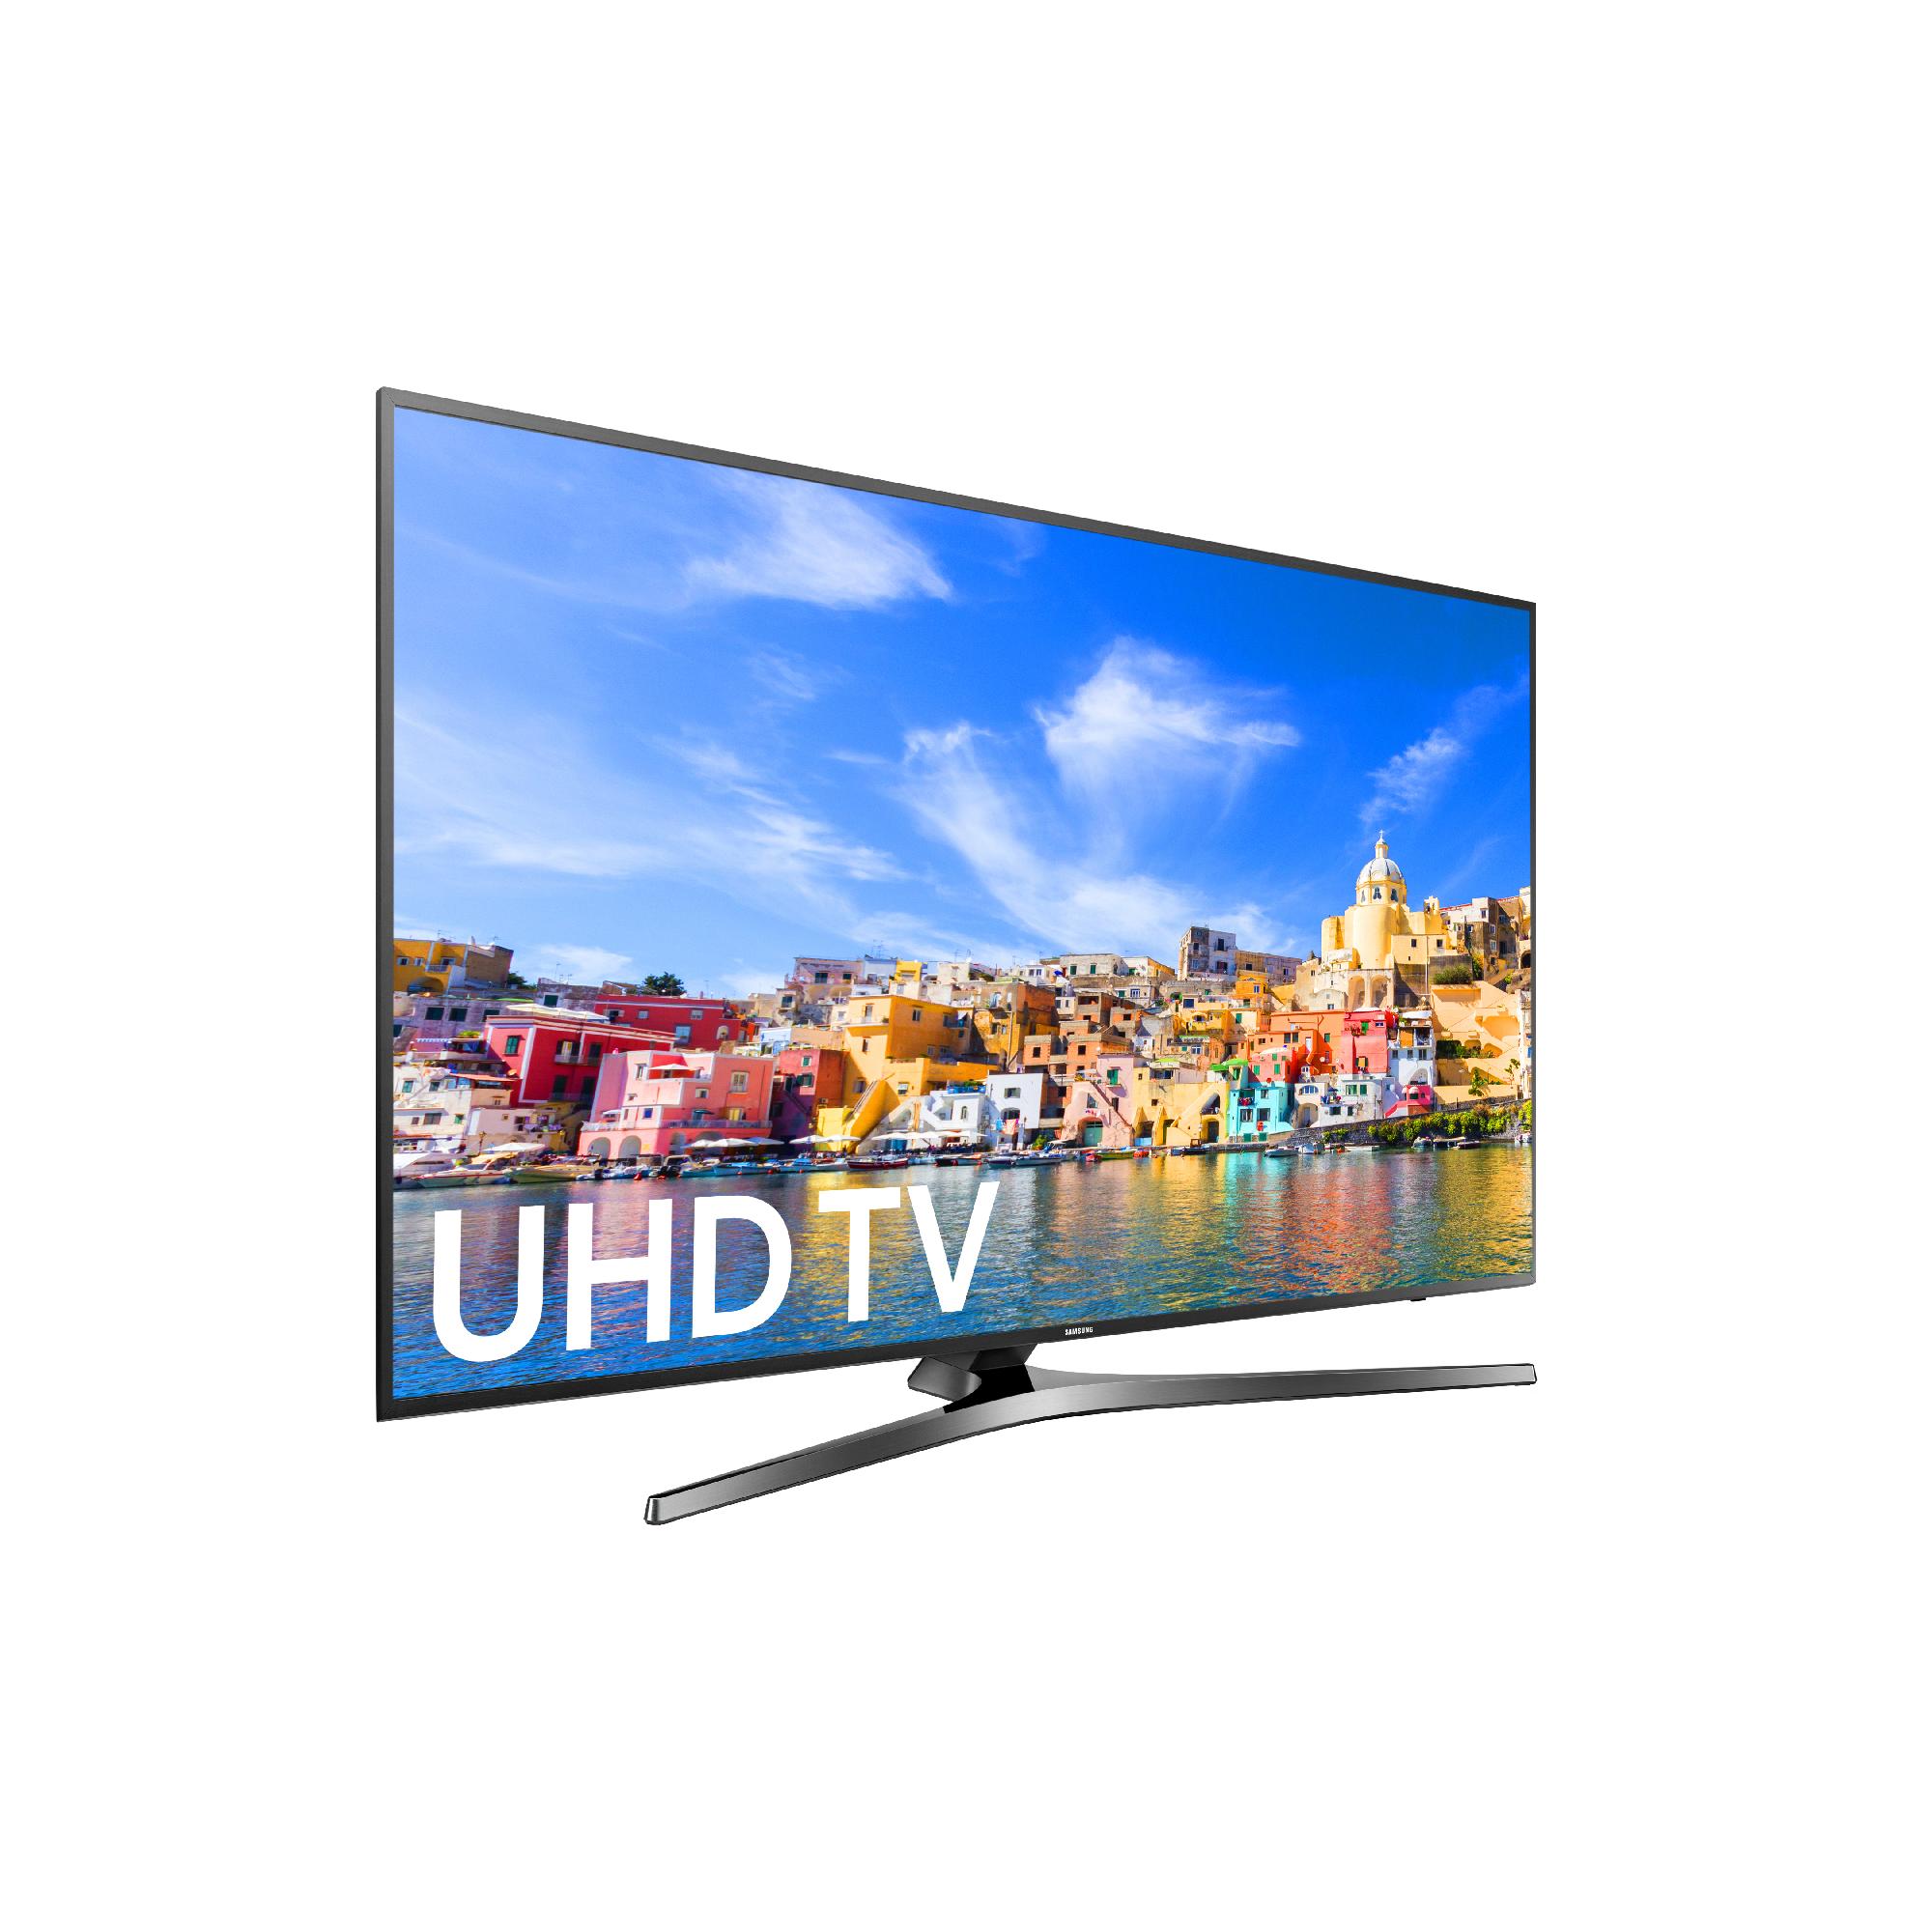 Samsung 55" Class 4K (2160P) Smart LED TV (UN55KU7000) - image 3 of 5